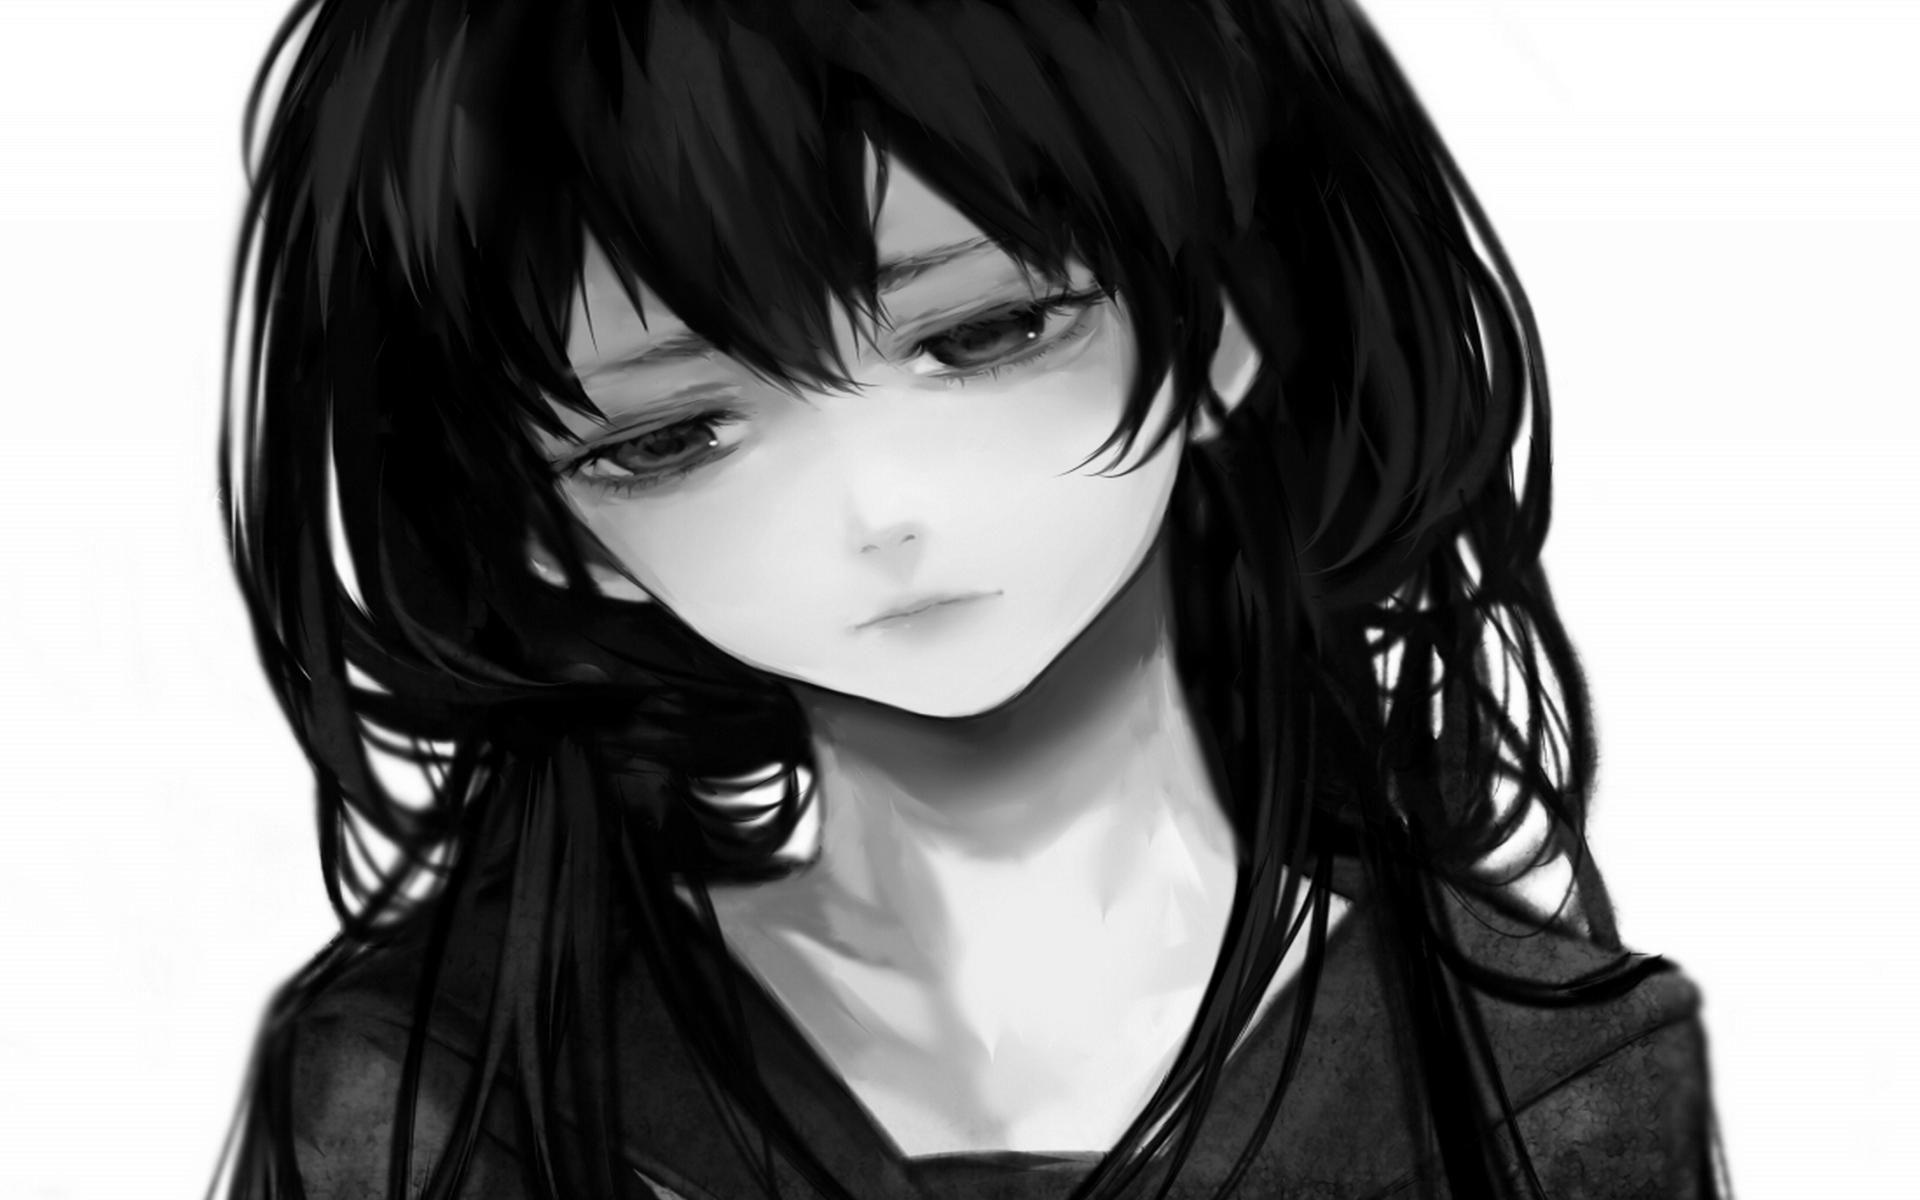 Sad Anime Girl Black and White Wallpapers - Top Free Sad Anime Girl